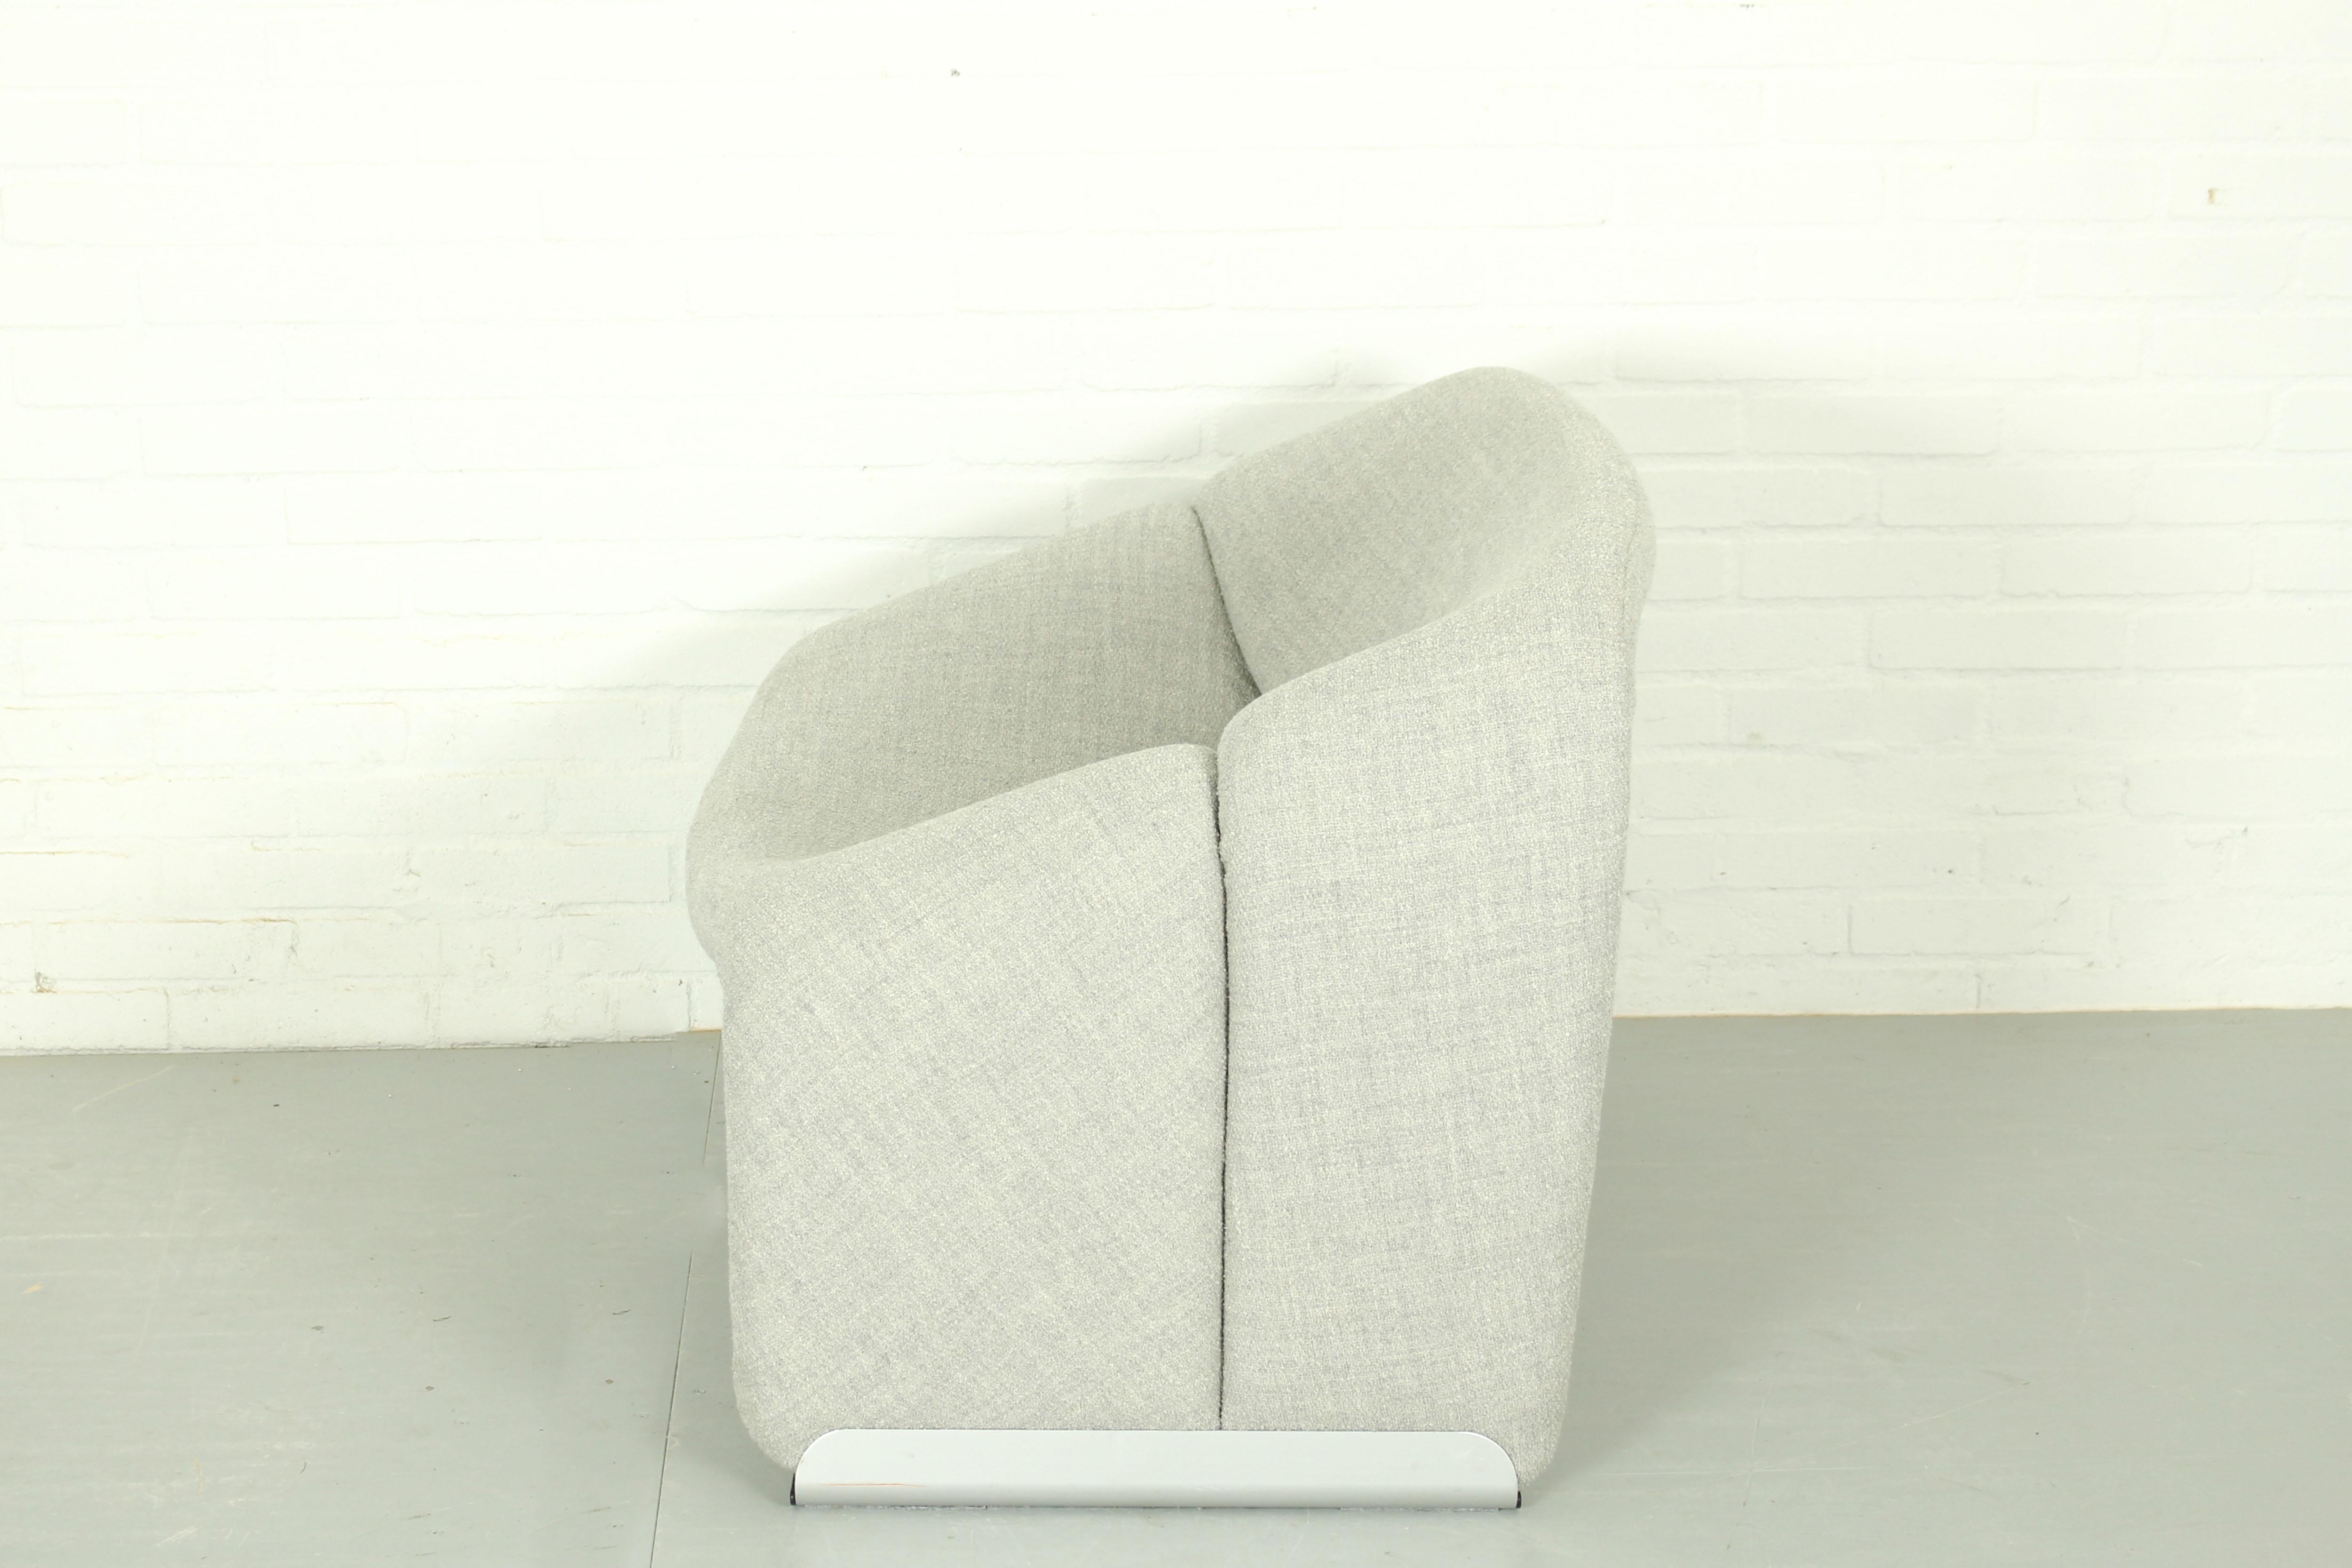 Le designer français Pierre Paulin a conçu la chaise groovy (ou F598) pour Artifort. Un grand confort et un design intemporel et emblématique. Remeublé avec le tissu Outback de Kvadrat, couleur 111. 

Dimensions : 64cm h, 85cmw, 67cm d. 
